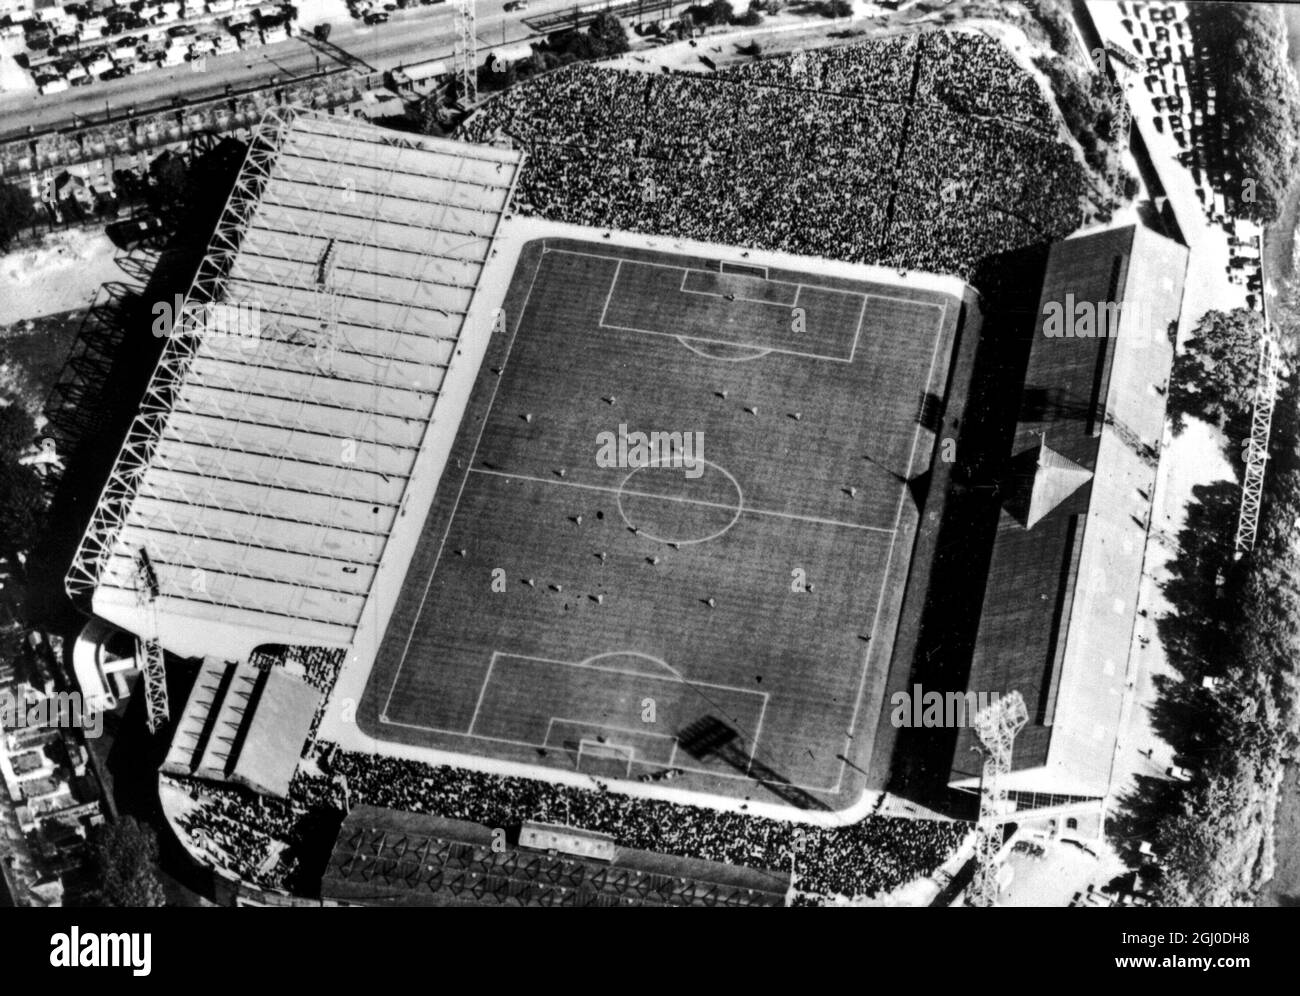 Una vista aerea del campo da calcio del mercoledì di Sheffield a Hillsborough, Sheffield. La Svizzera, la Germania occidentale, l'Argentina e la Spagna parteciperanno ad alcune delle loro partite di Coppa del mondo. 21 gennaio 1966. Foto Stock